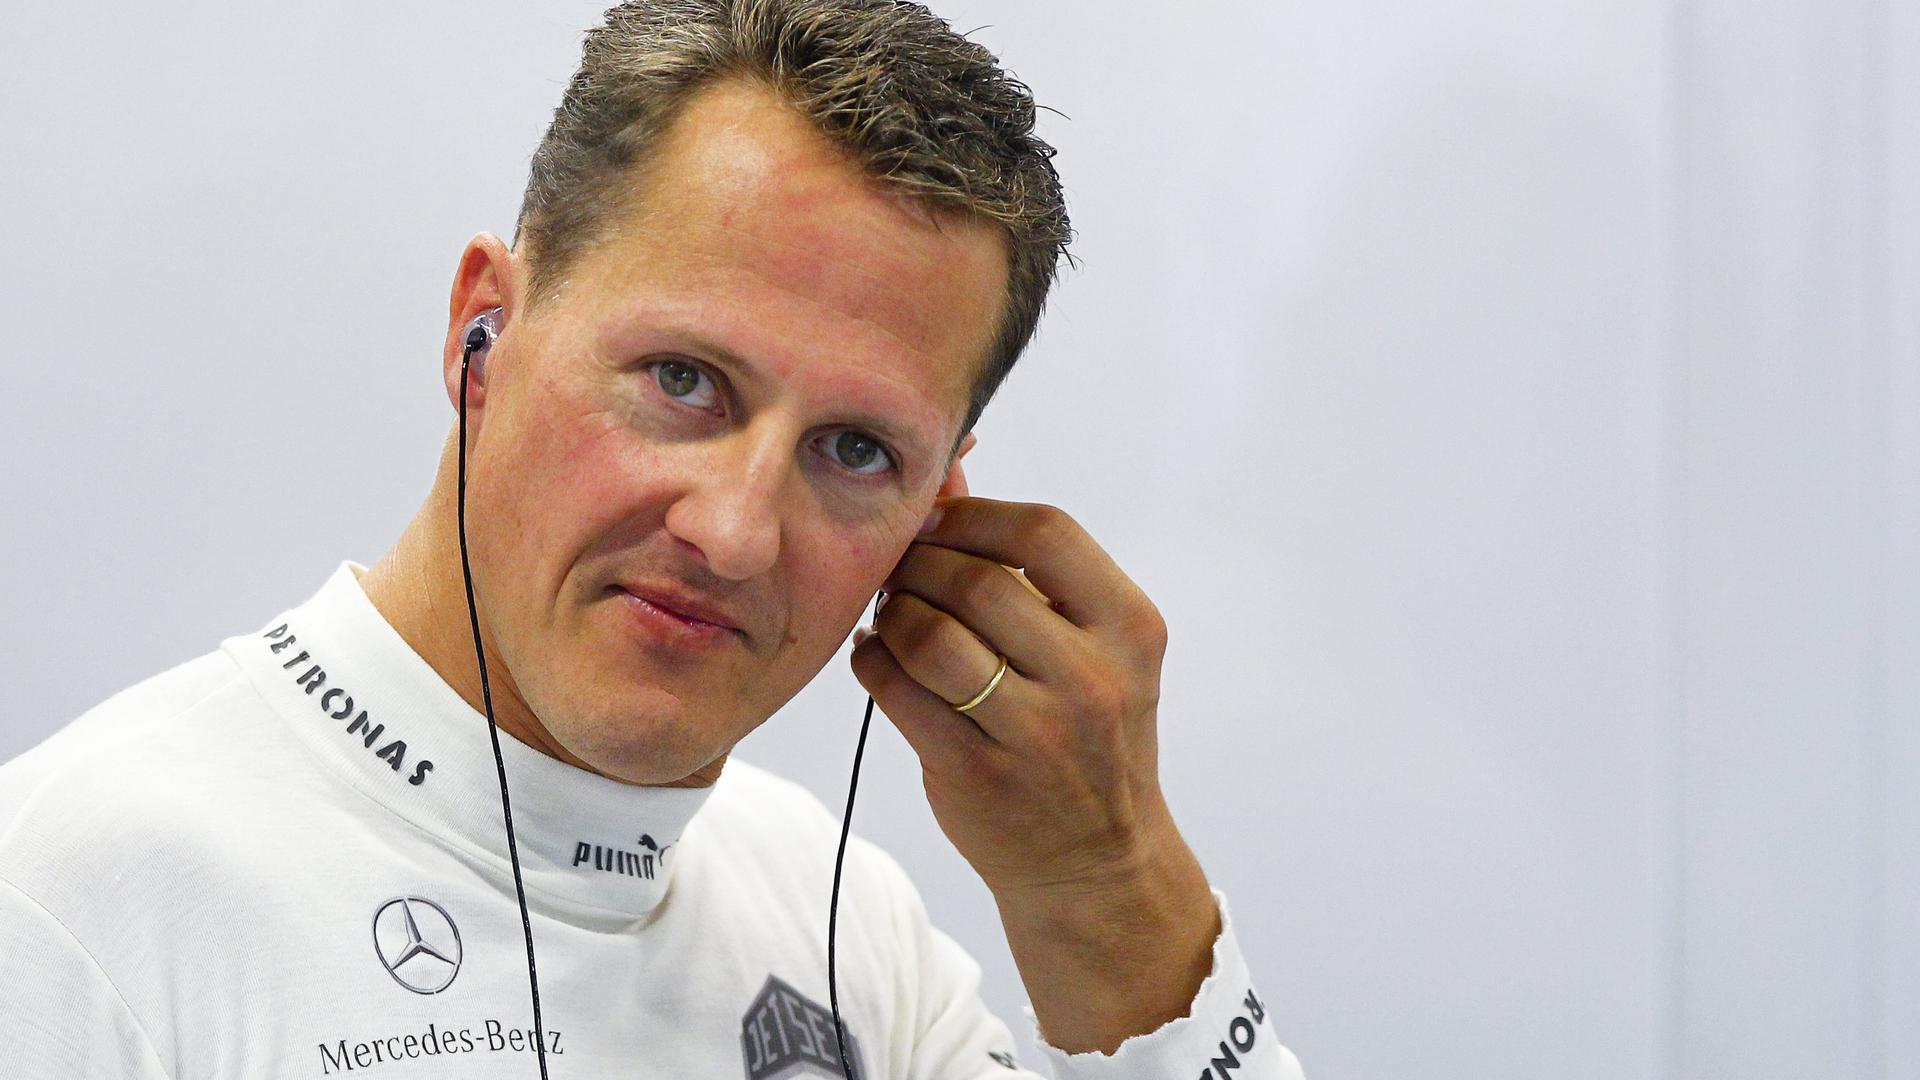 Le magazine s'était targué d'avoir obtenu un entretien avec Michael Schumacher, le premier depuis son accident de ski et son grave traumatisme crânien fin 2013.